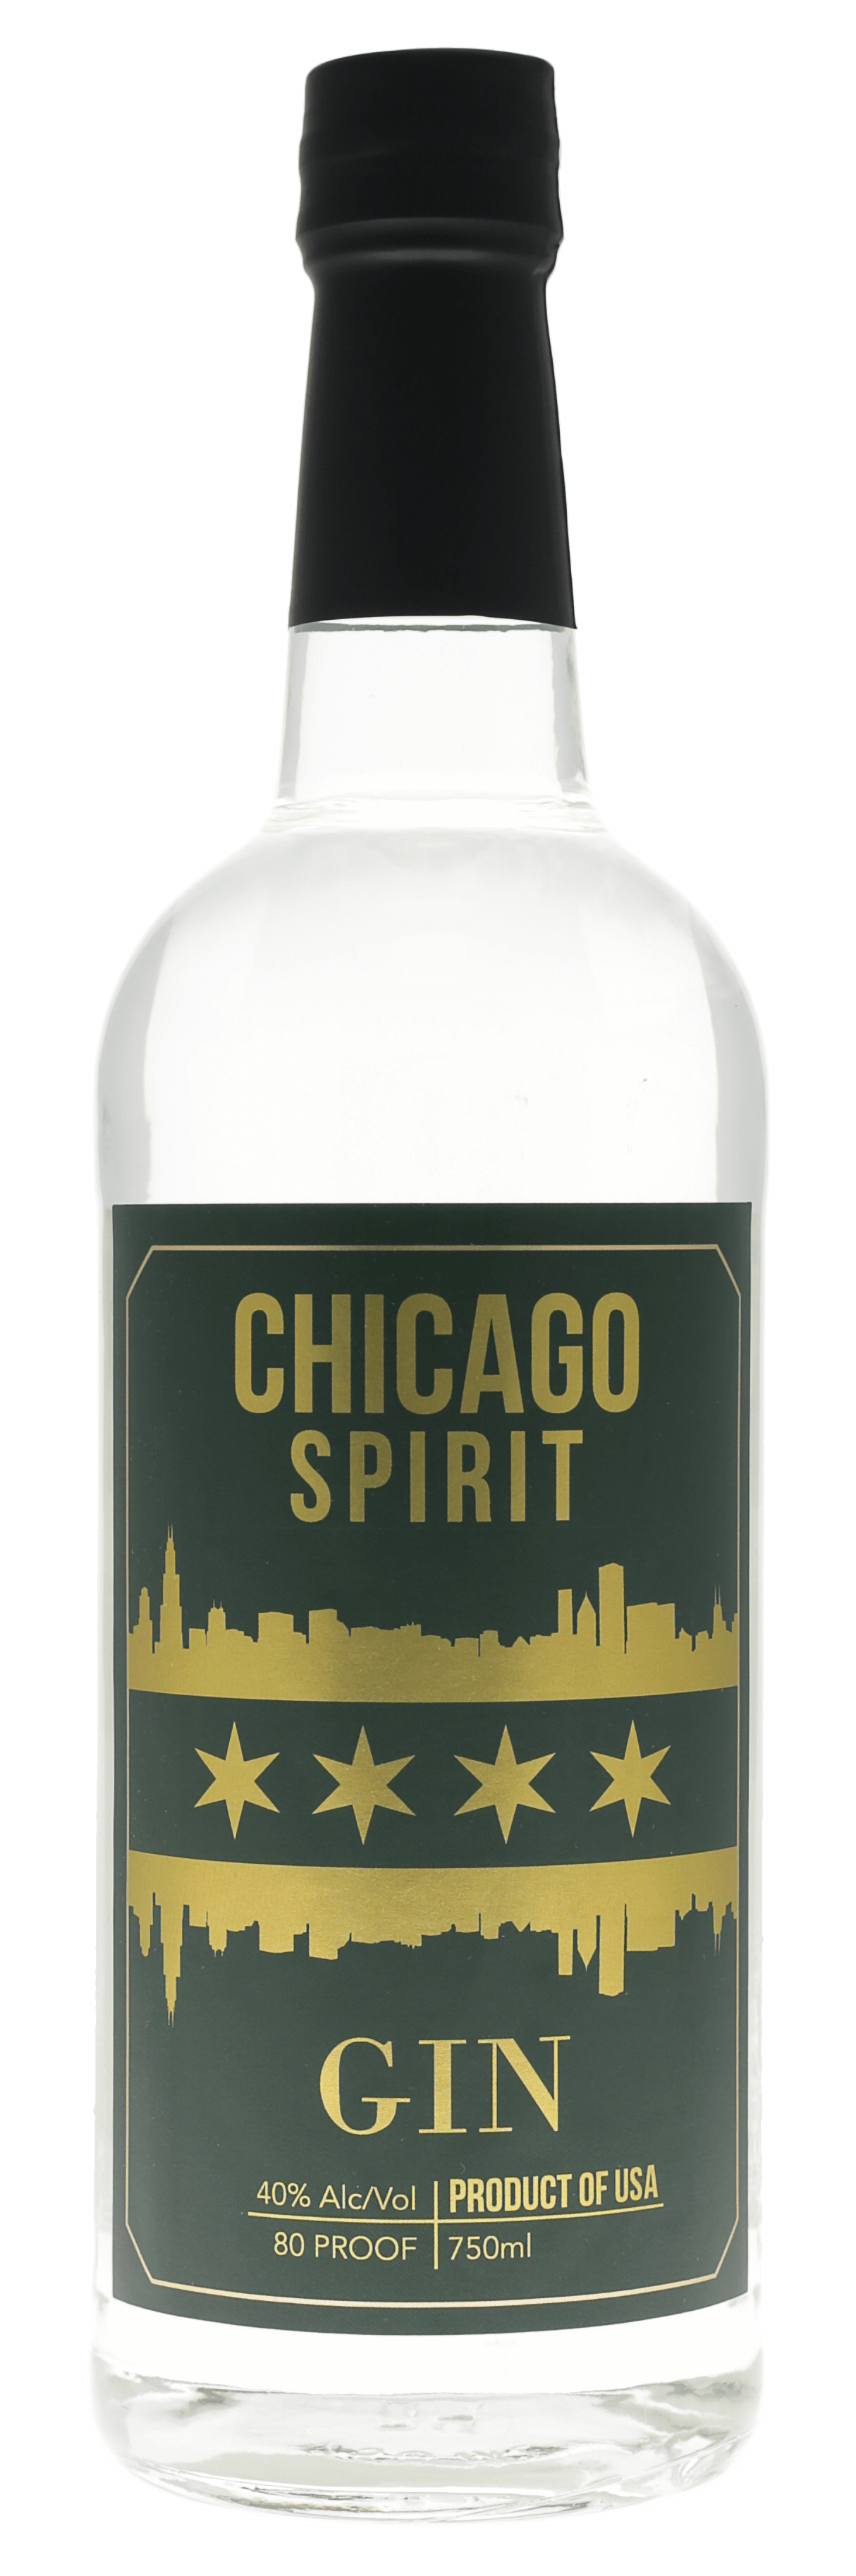 Chicago Spirit Gin